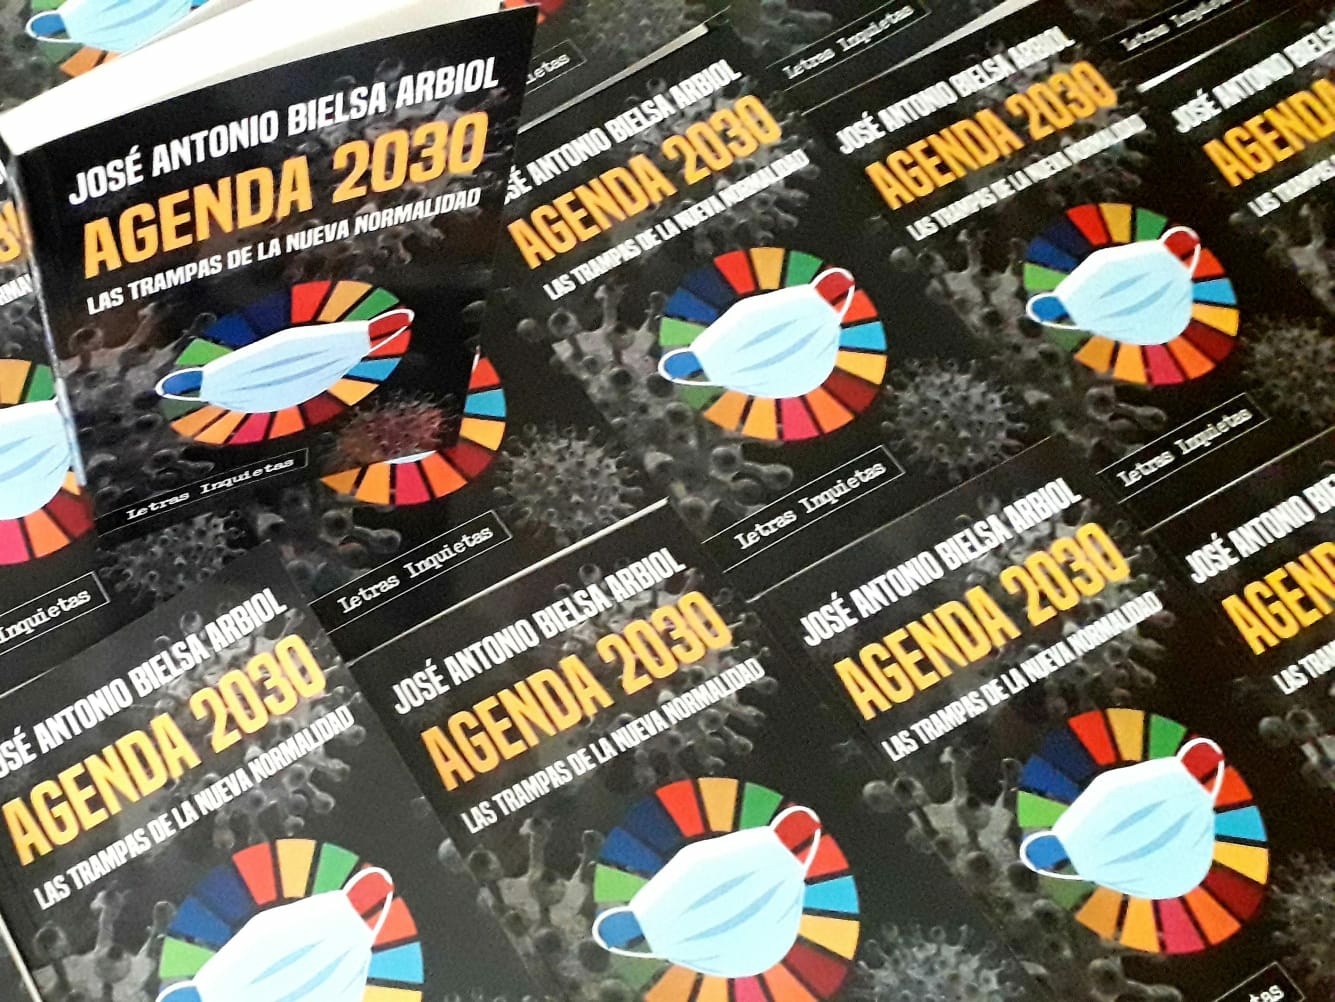 José Antonio Bielsa Arbiol firmará este viernes en Zaragoza ejemplares de Agenda 2030: Las trampas de la Nueva Normalidad